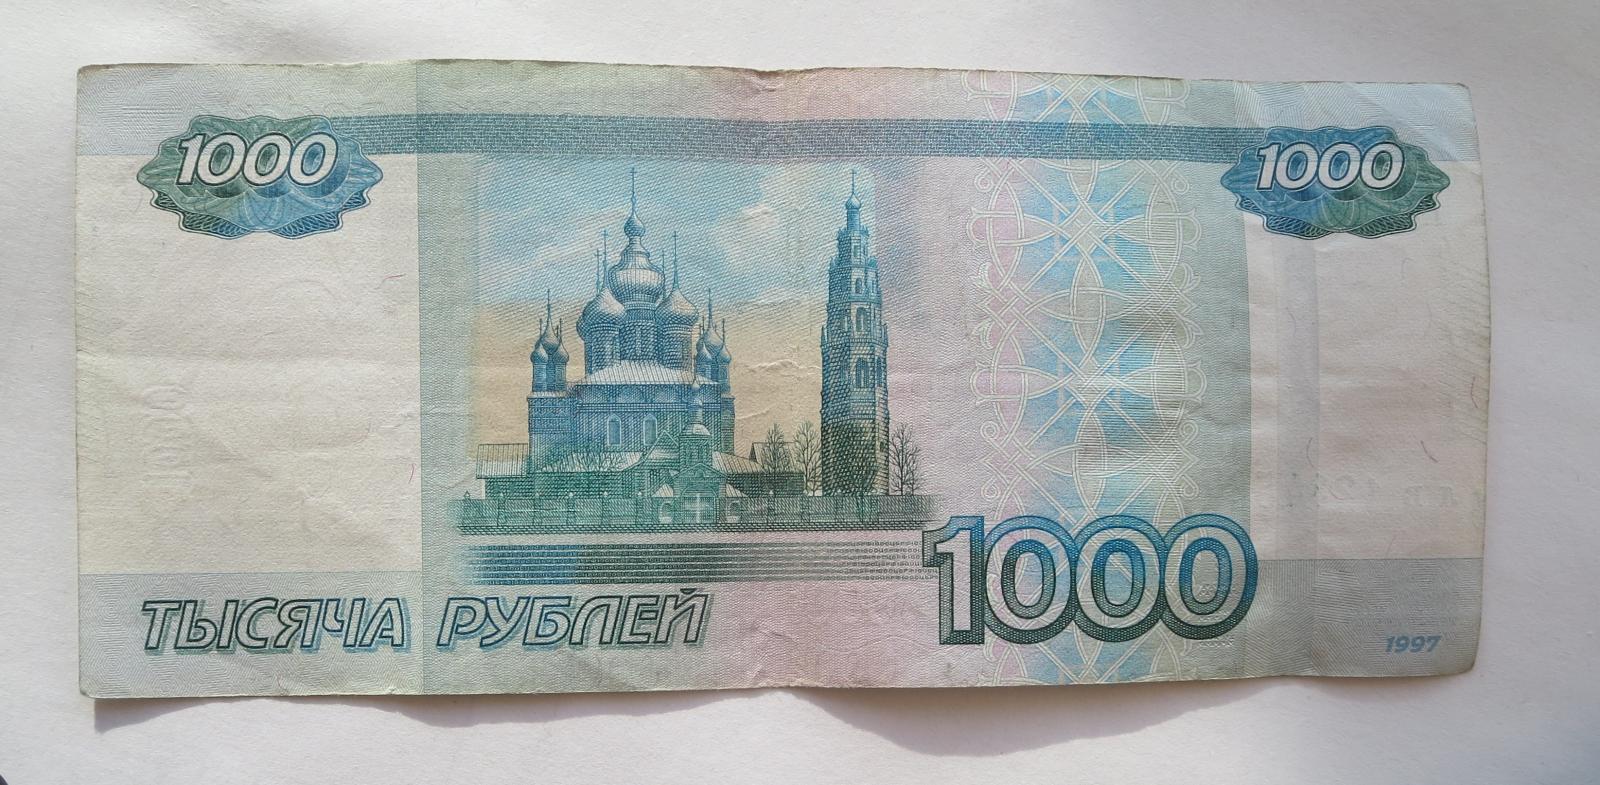 1000 рублей плюс 1000 рублей. 1000 Рублей. Банкнота 1000 рублей. Тысяча рублей купюра. 1000 Тысяч рублей.